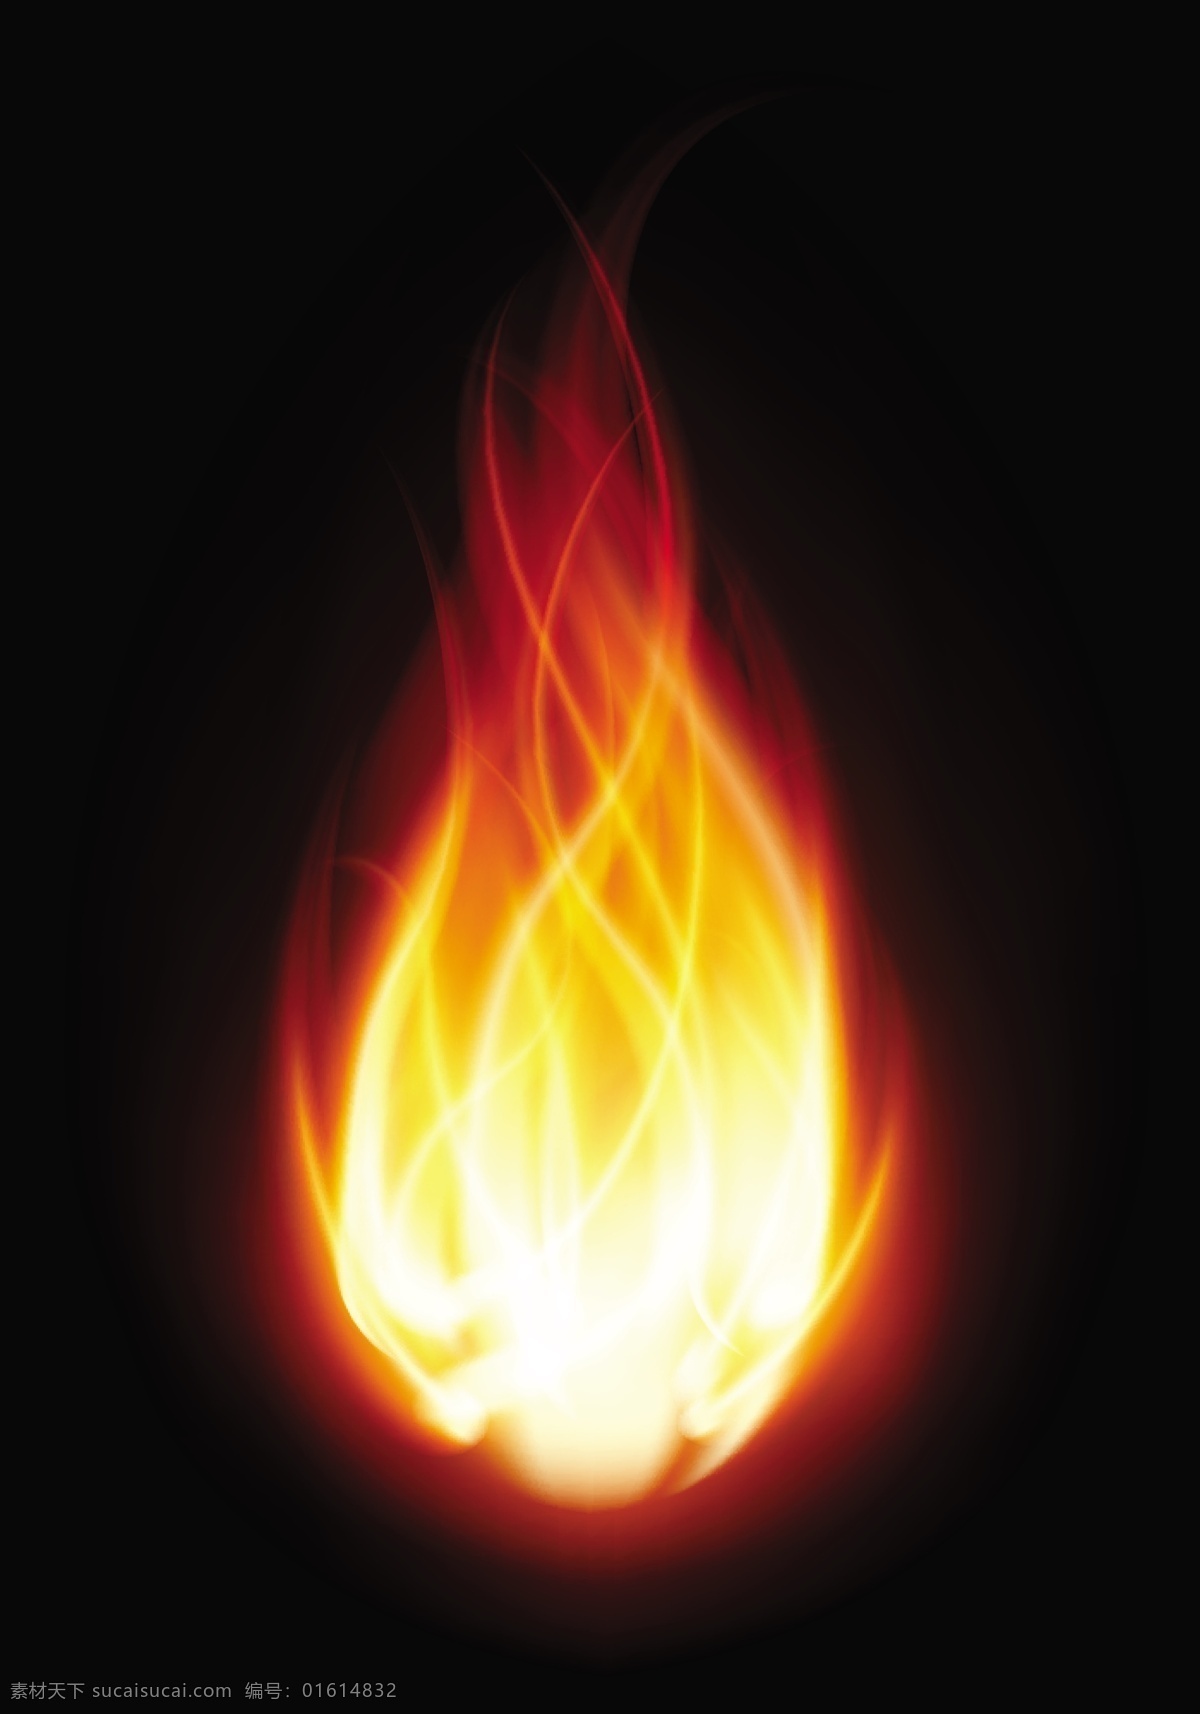 火焰 燃烧 焰火 火素材 火焰背景 红色火焰 动感火焰 漂亮的火焰 烈焰效果 跳跃 烈火 大火 燃烧的火焰 火光 金黄色 火苗